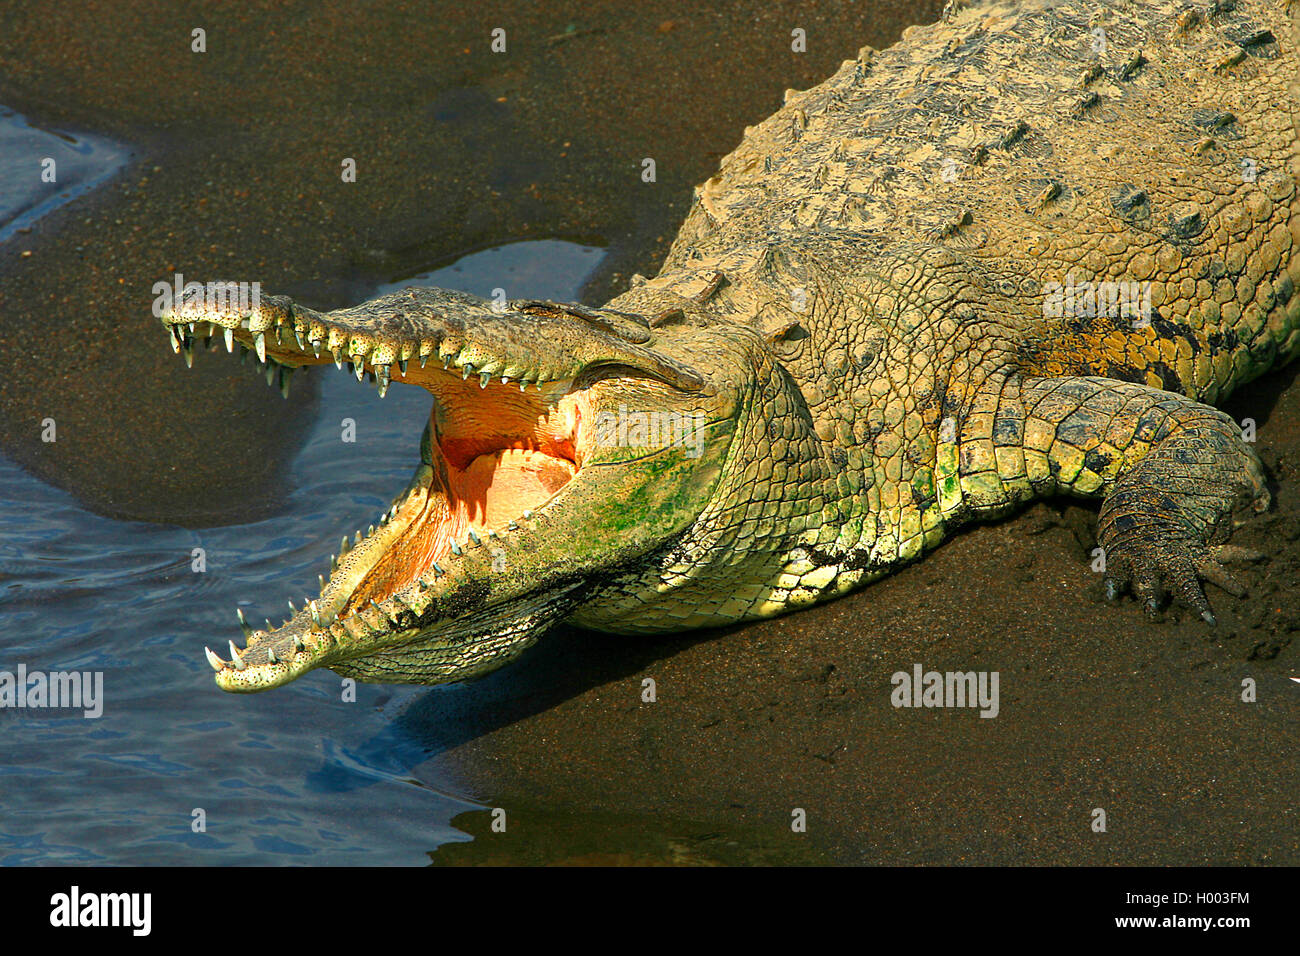 Crocodile (Crocodylus acutus), sunbths sur la rive, Costa Rica Banque D'Images